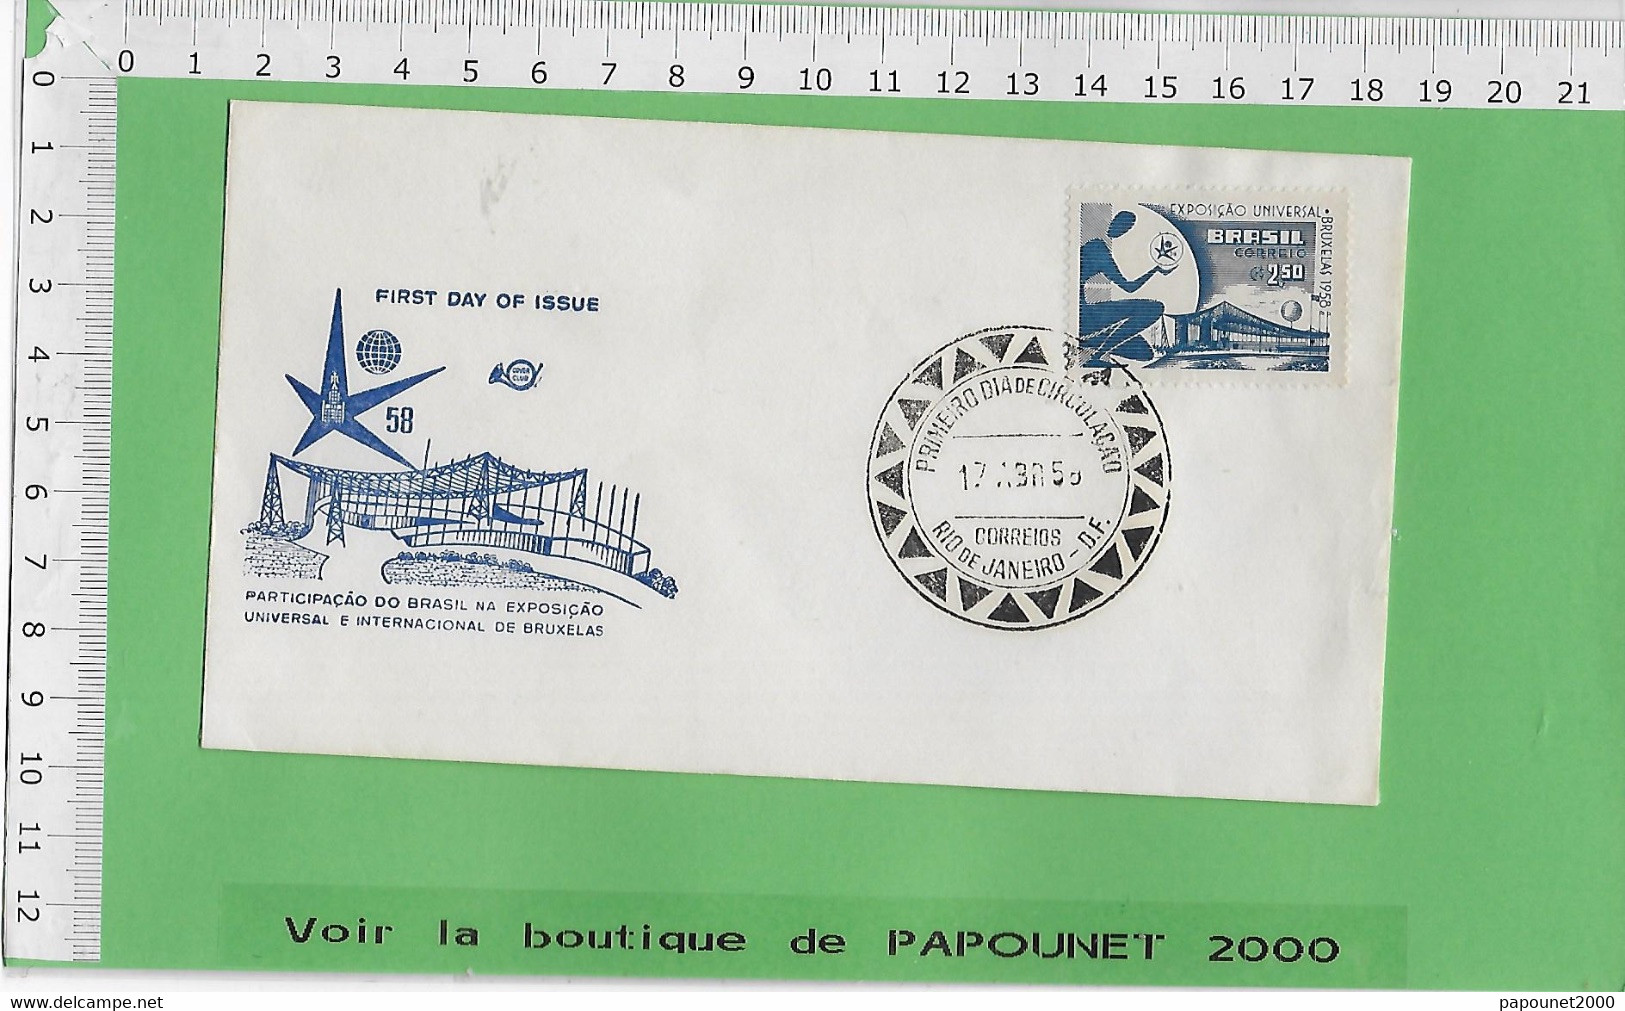 02581 - E BE04 1000-EXPO 58 : Timbre*Enveloppe /  PAVILLON DU BRESIL - 1958 – Bruselas (Bélgica)